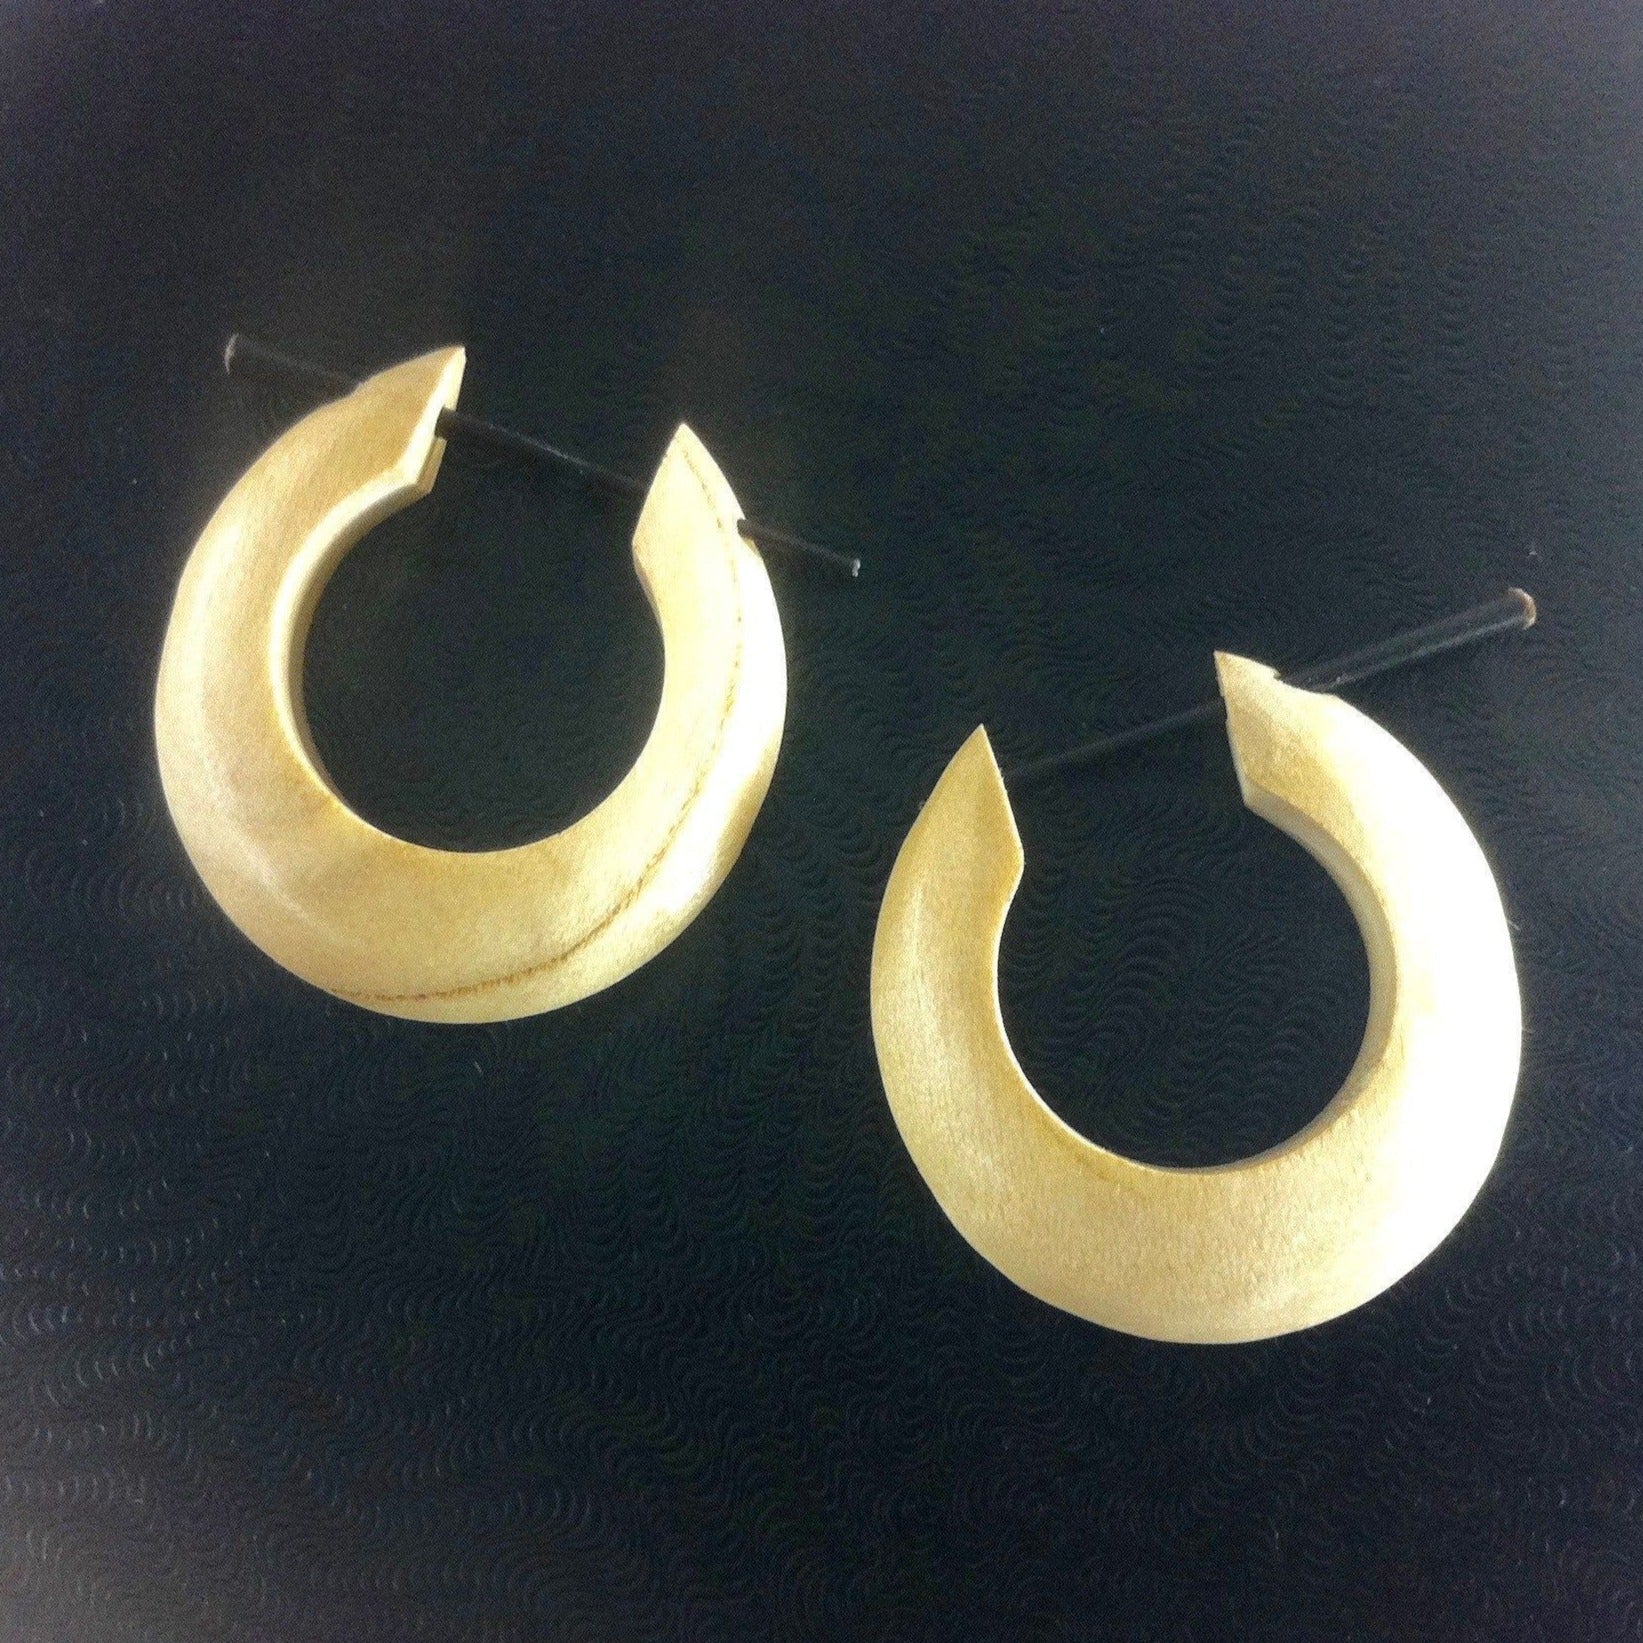 Wood Earrings :|: Medium Large Hoop Earrings, Cream Wood.